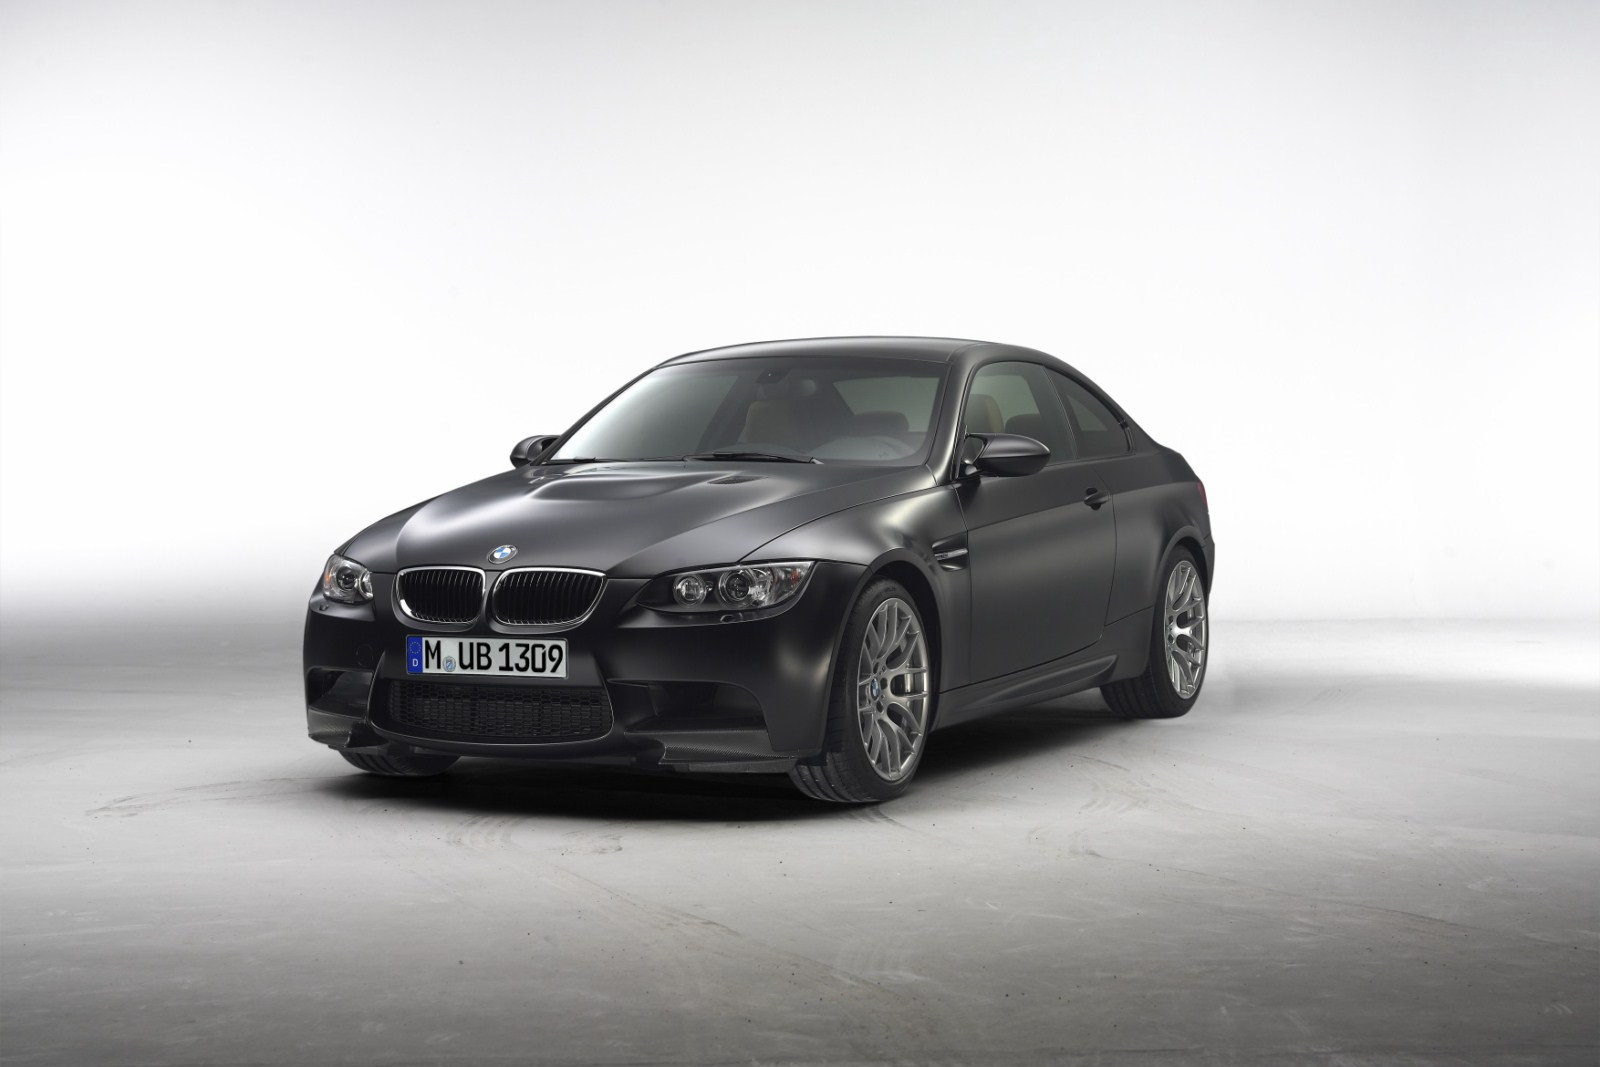 New car: 2011 BMW M3